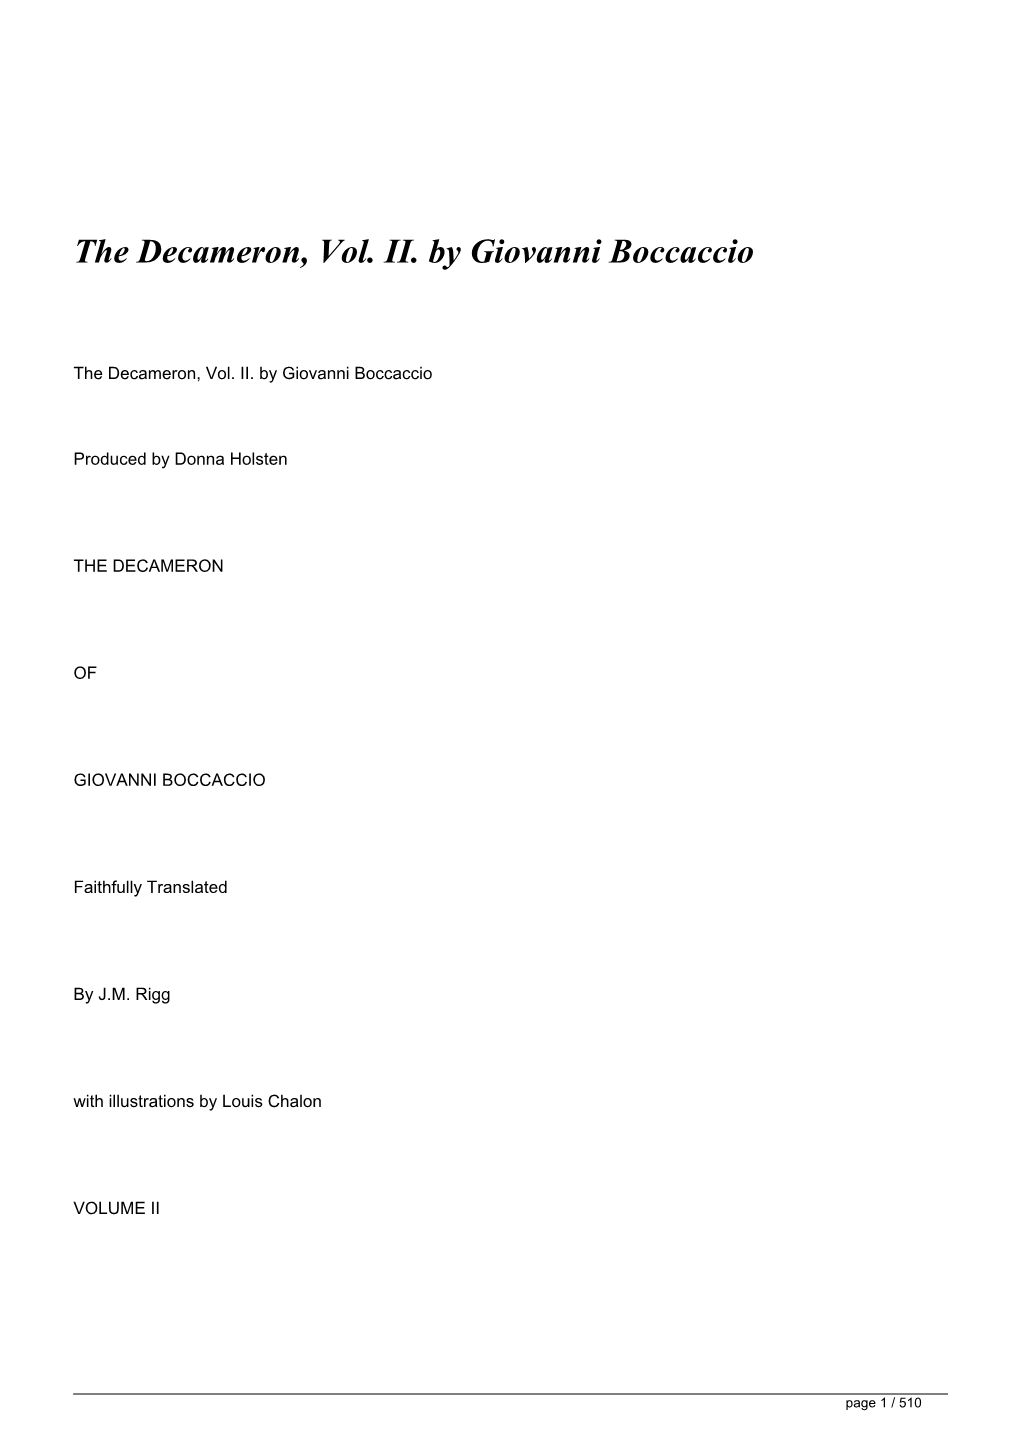 The Decameron, Vol. II. by Giovanni Boccaccio&lt;/H1&gt;